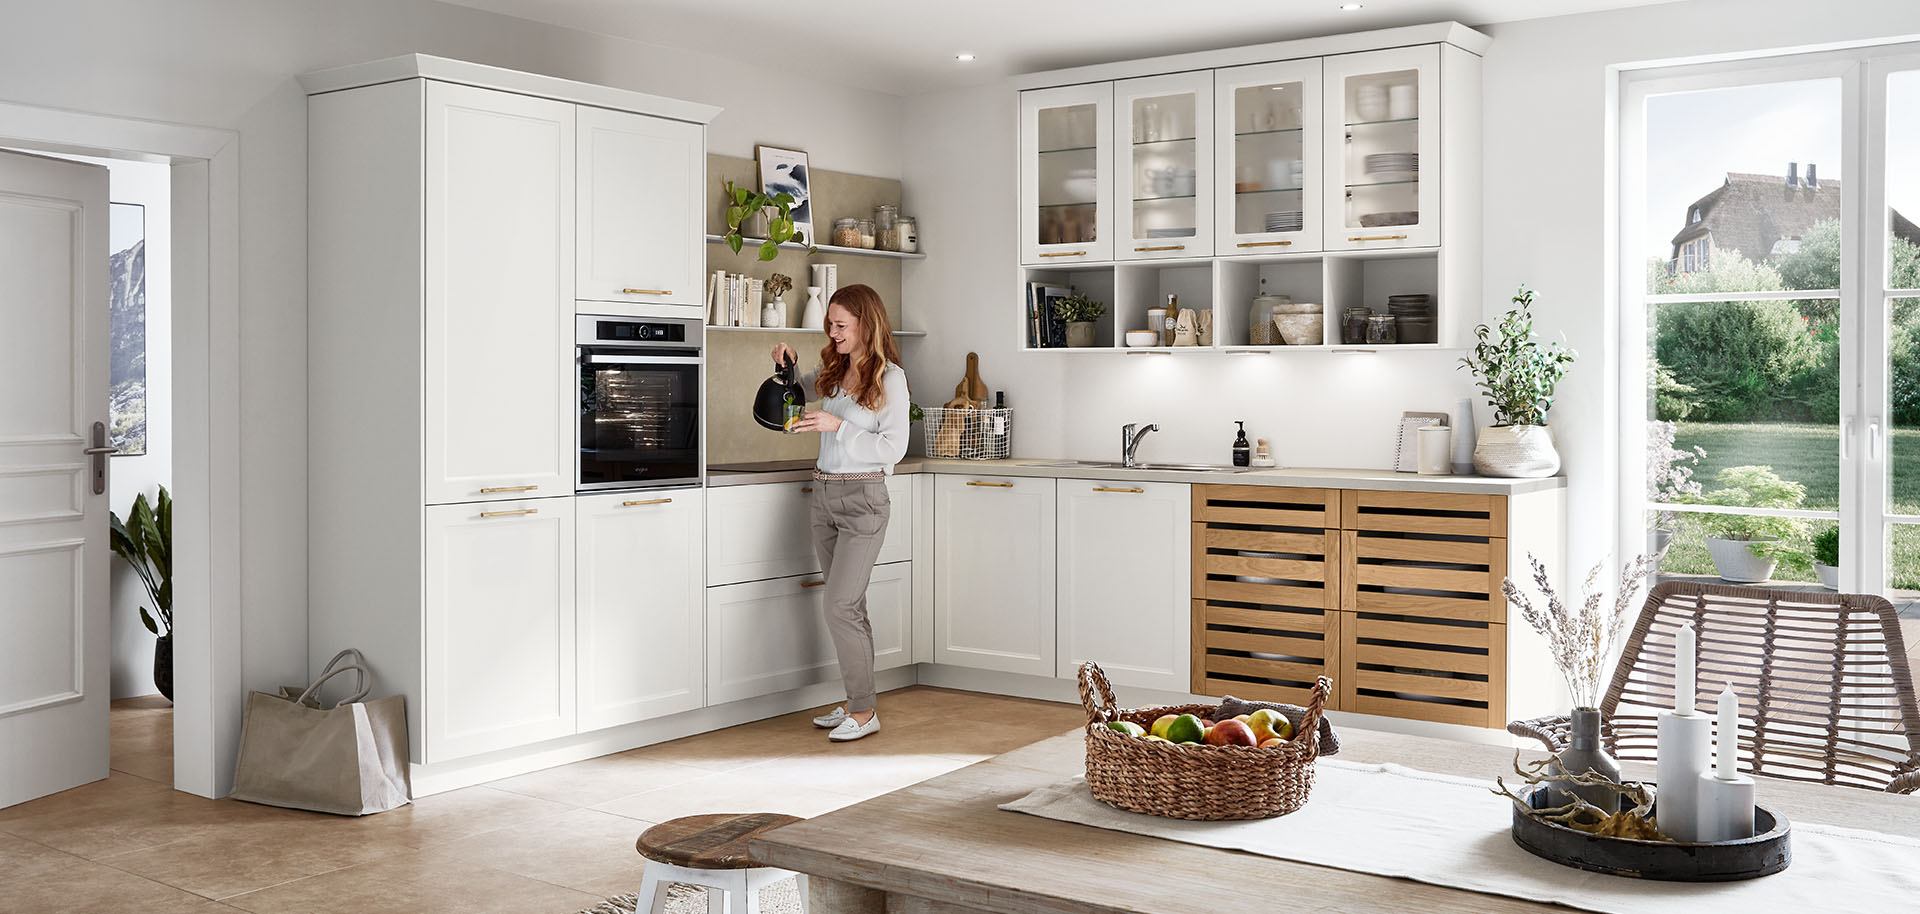 Een heldere, moderne keuken met witte kasten en houten accenten. Een persoon staat, in interactie met een slim apparaat, te midden van de met zonlicht gevulde ruimte.